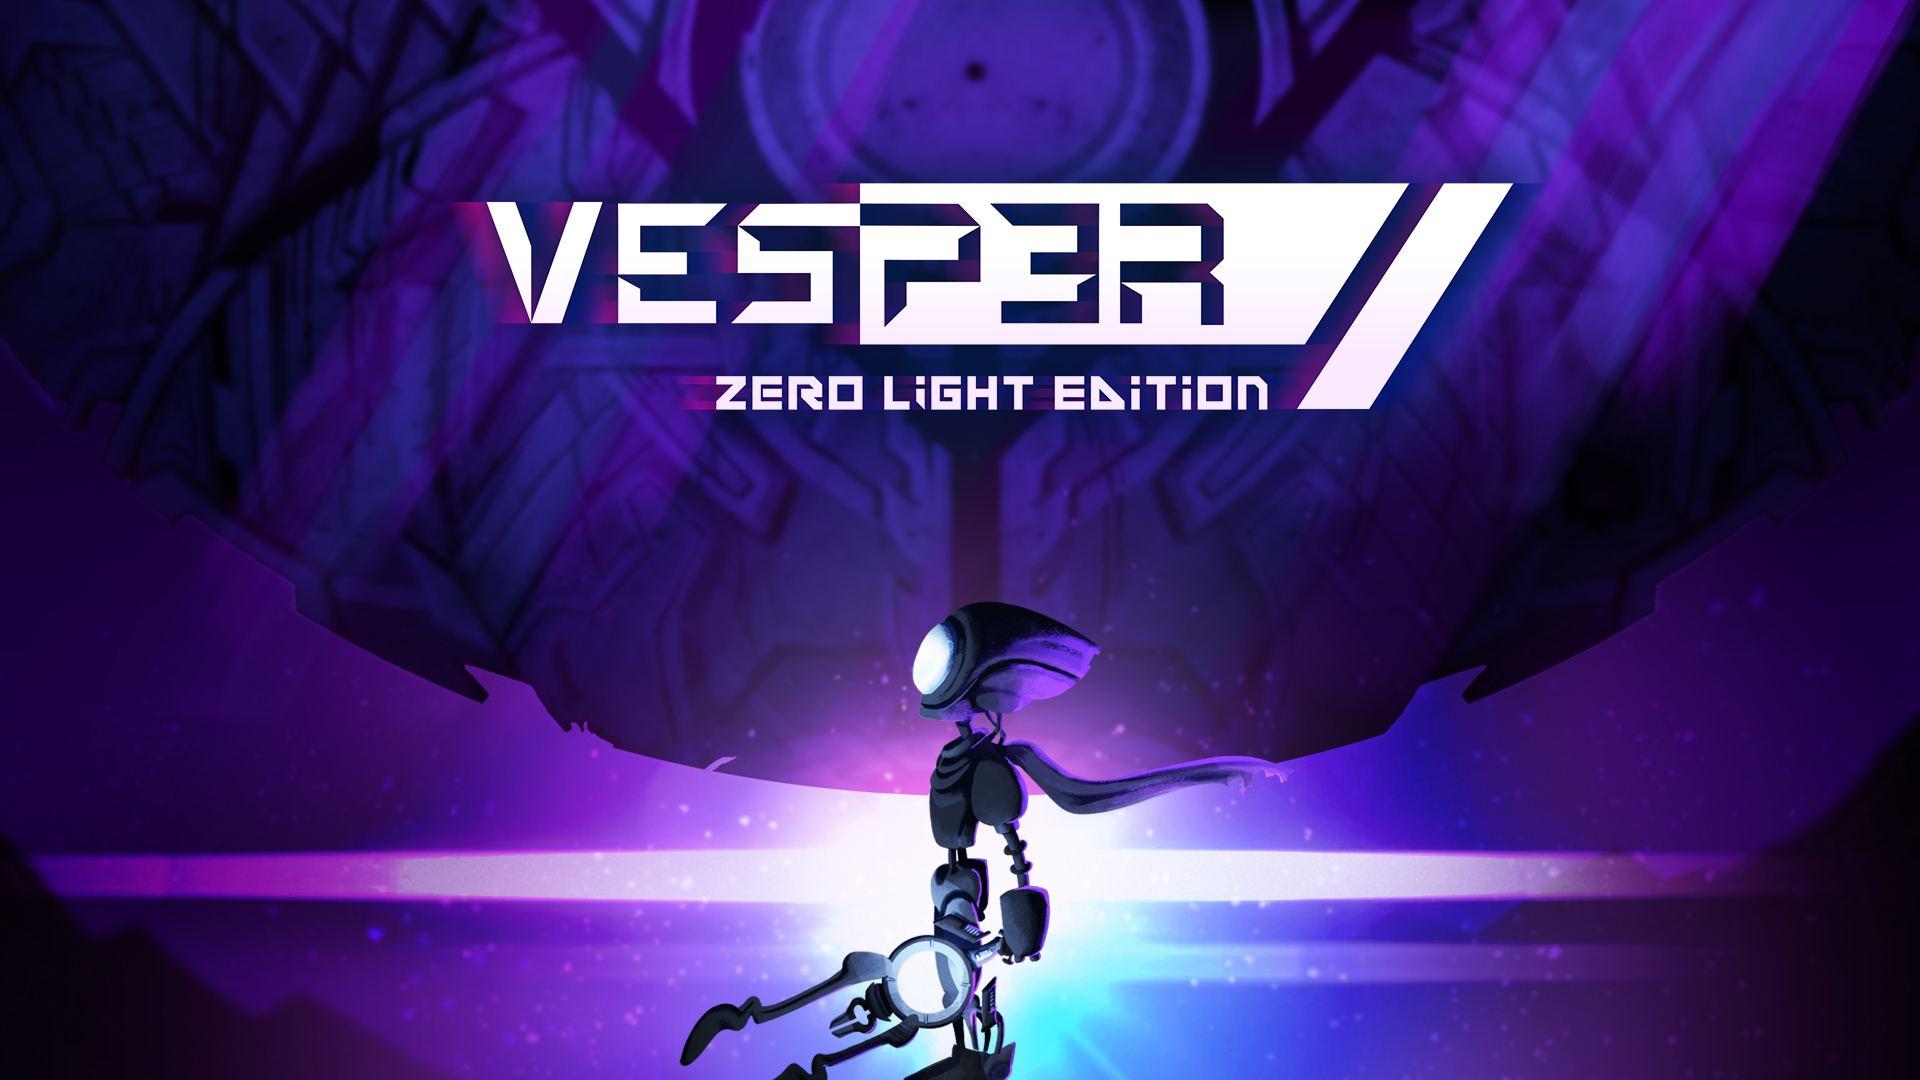 Vesper 2021 Game Wallpapers